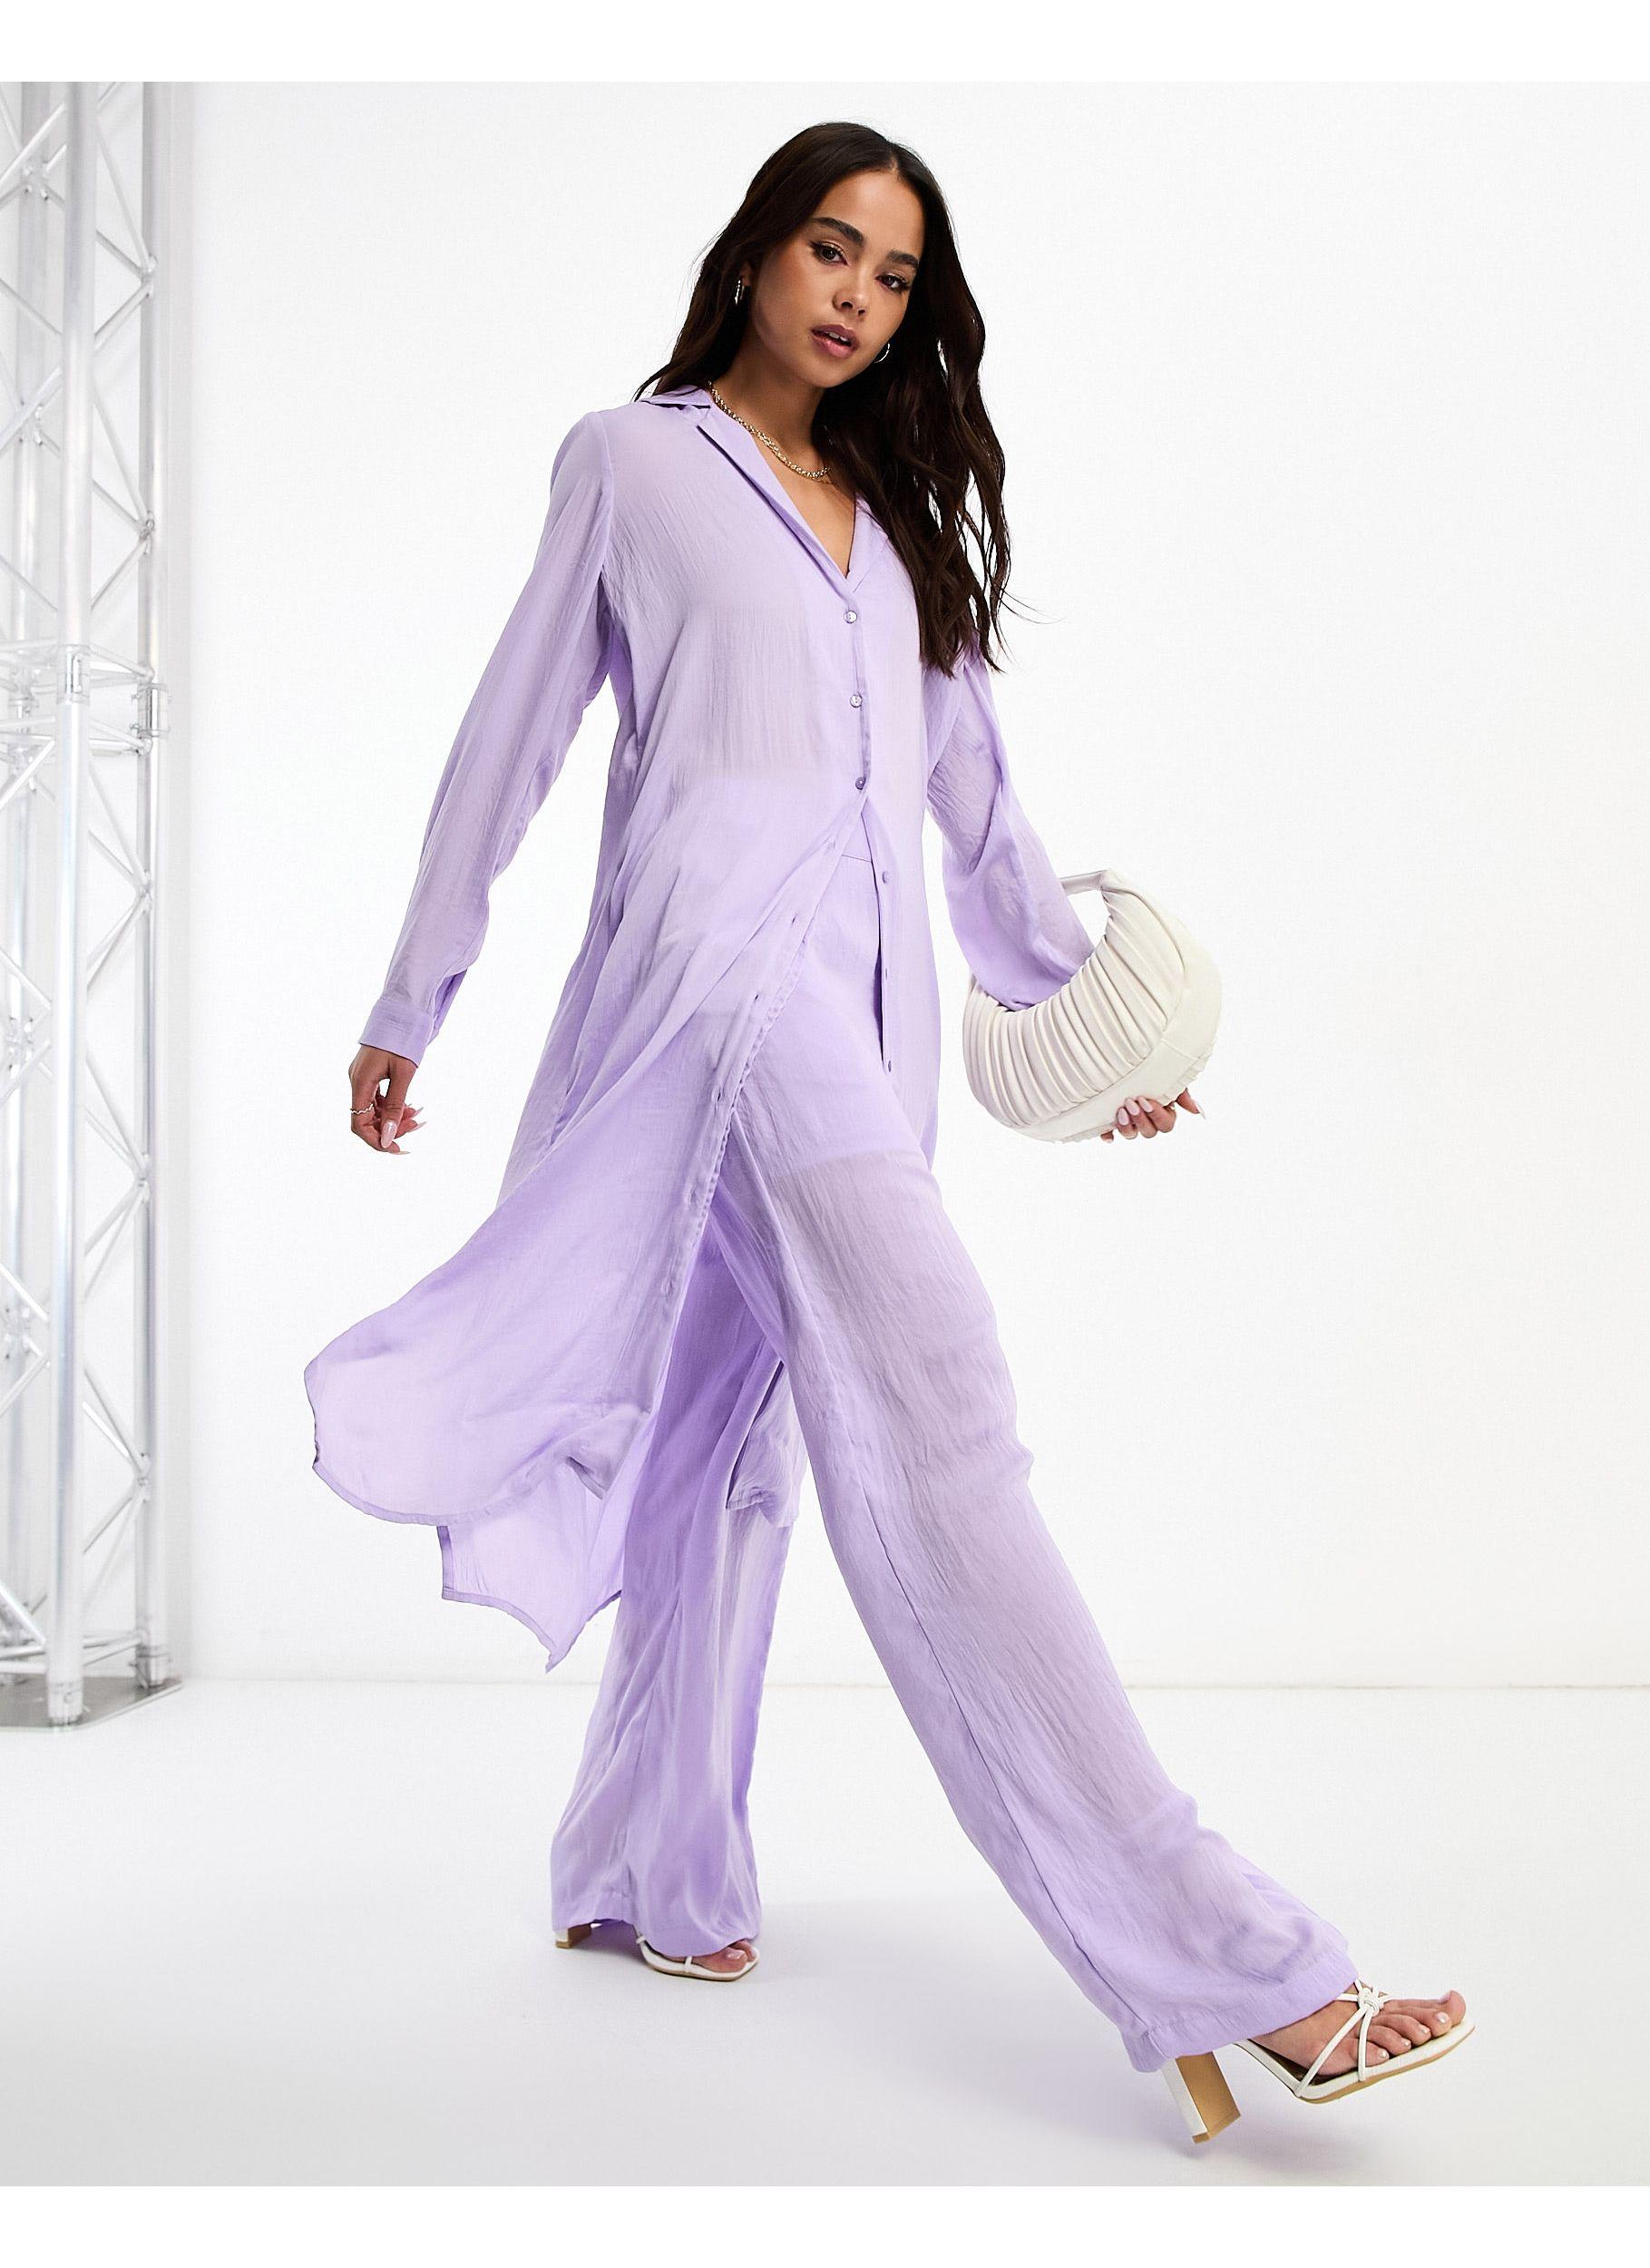 Vero Moda Aware Slinky Longline Shirt Co-ord in Purple | Lyst